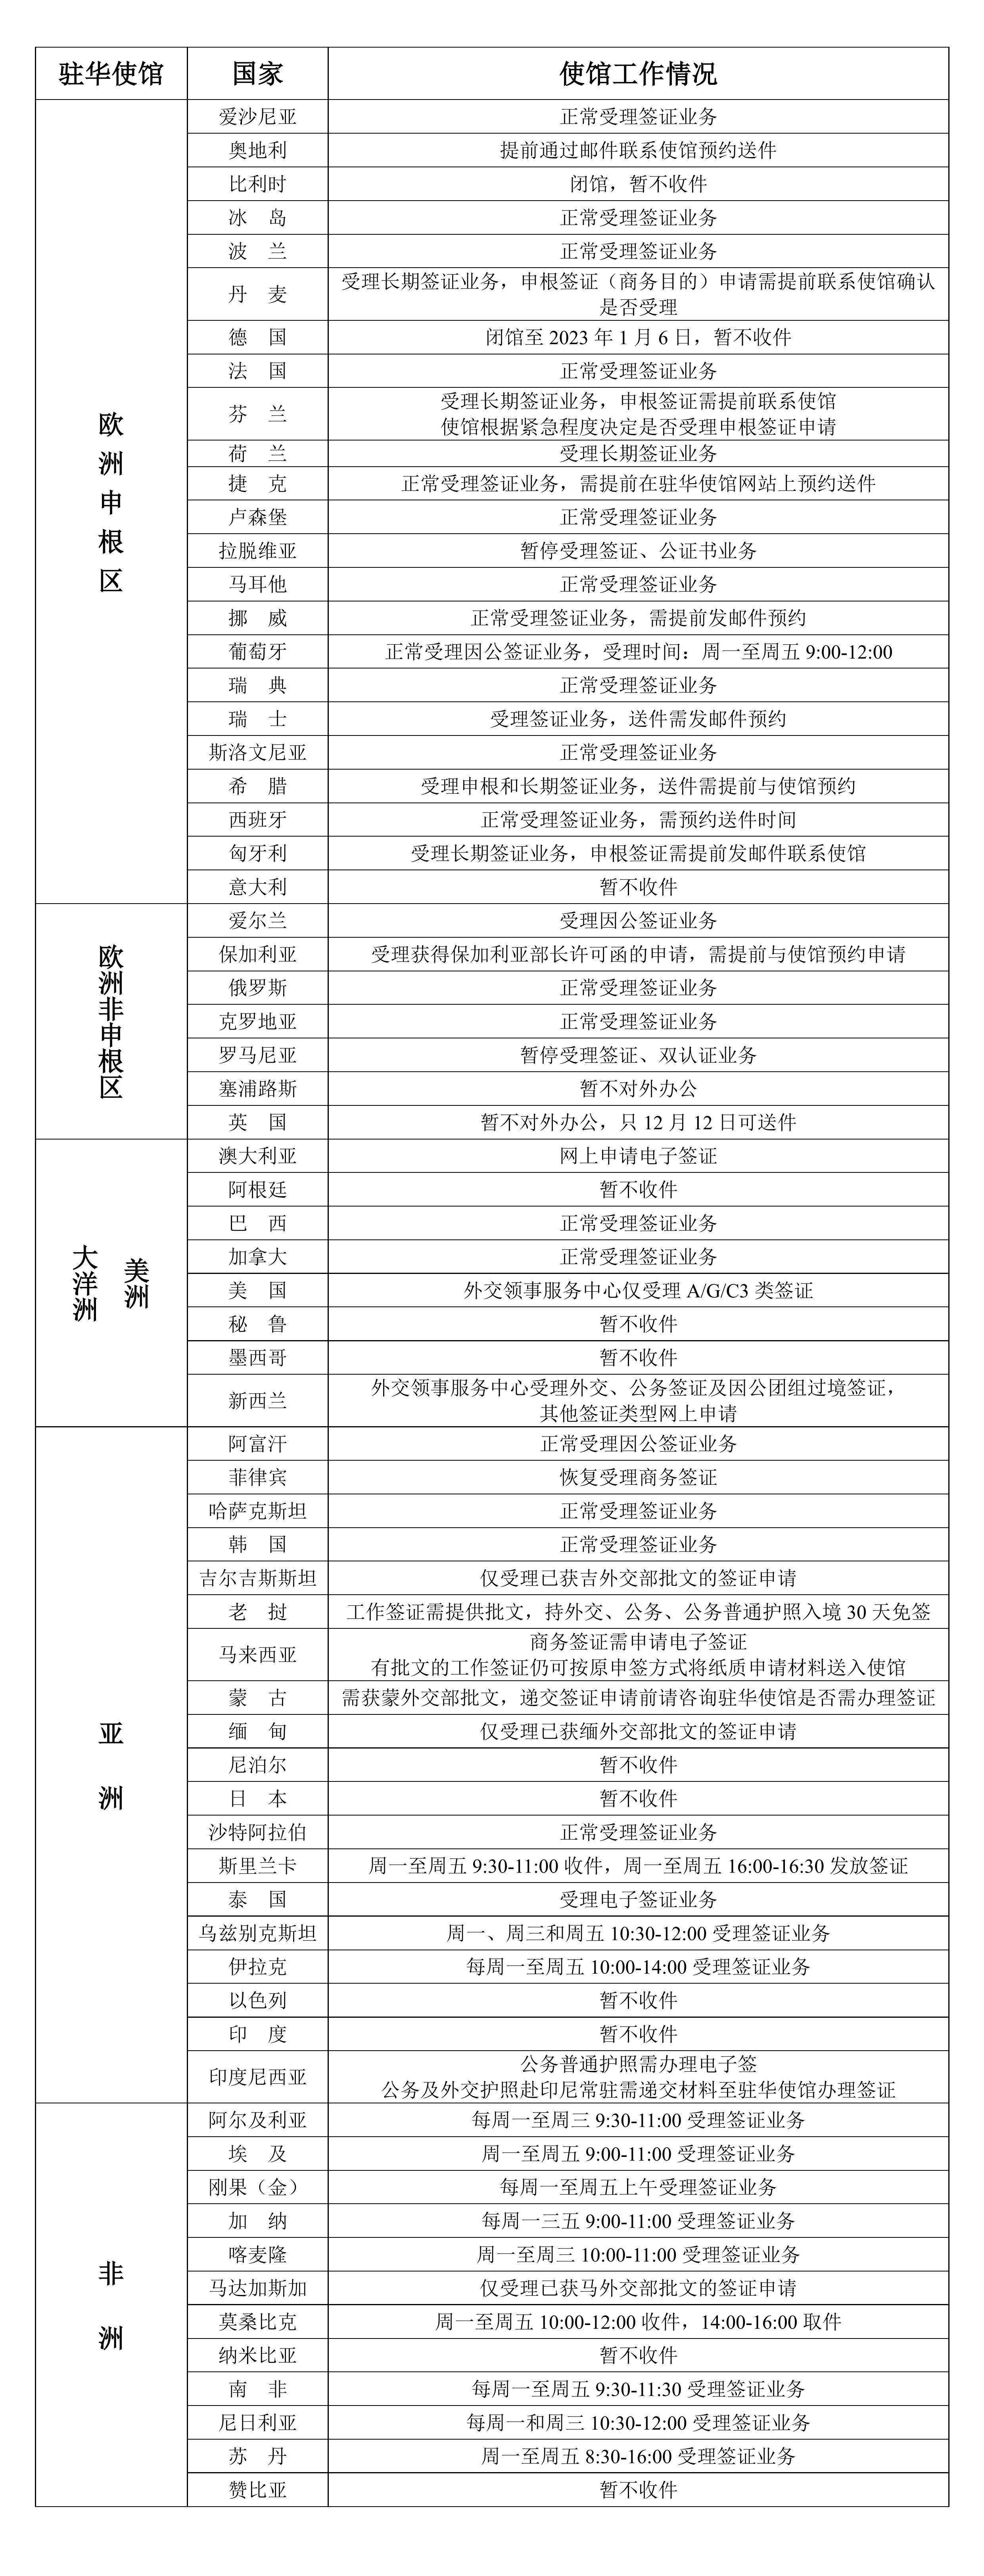 2022年12月14日部分驻华使馆工作情况统计表_00.jpg